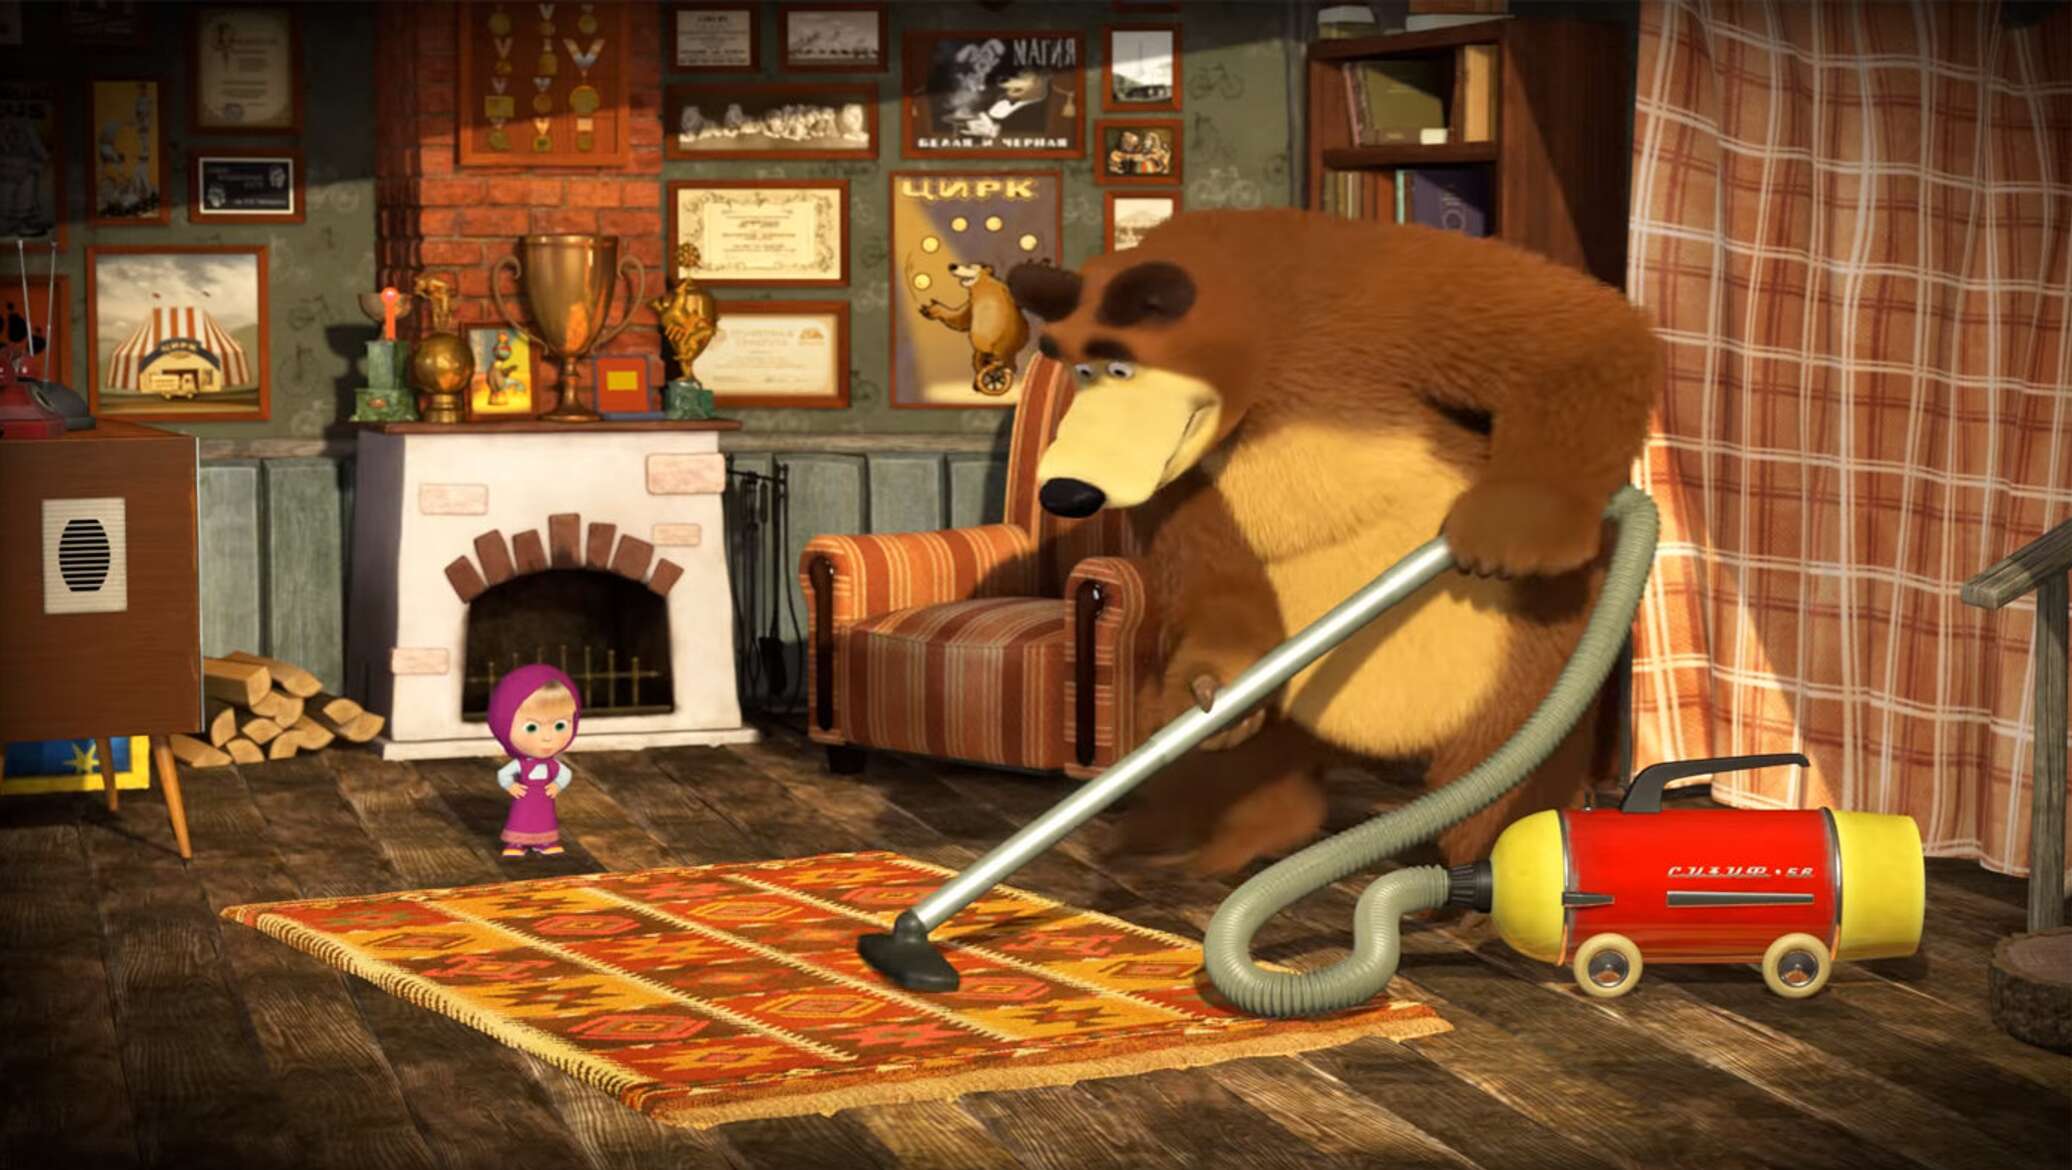 Анимаккорд маша и медведь. Студия Анимаккорд Маша и медведь. Анимационная студия Анимаккорд Маша и медведь. Мишка пылесосит.